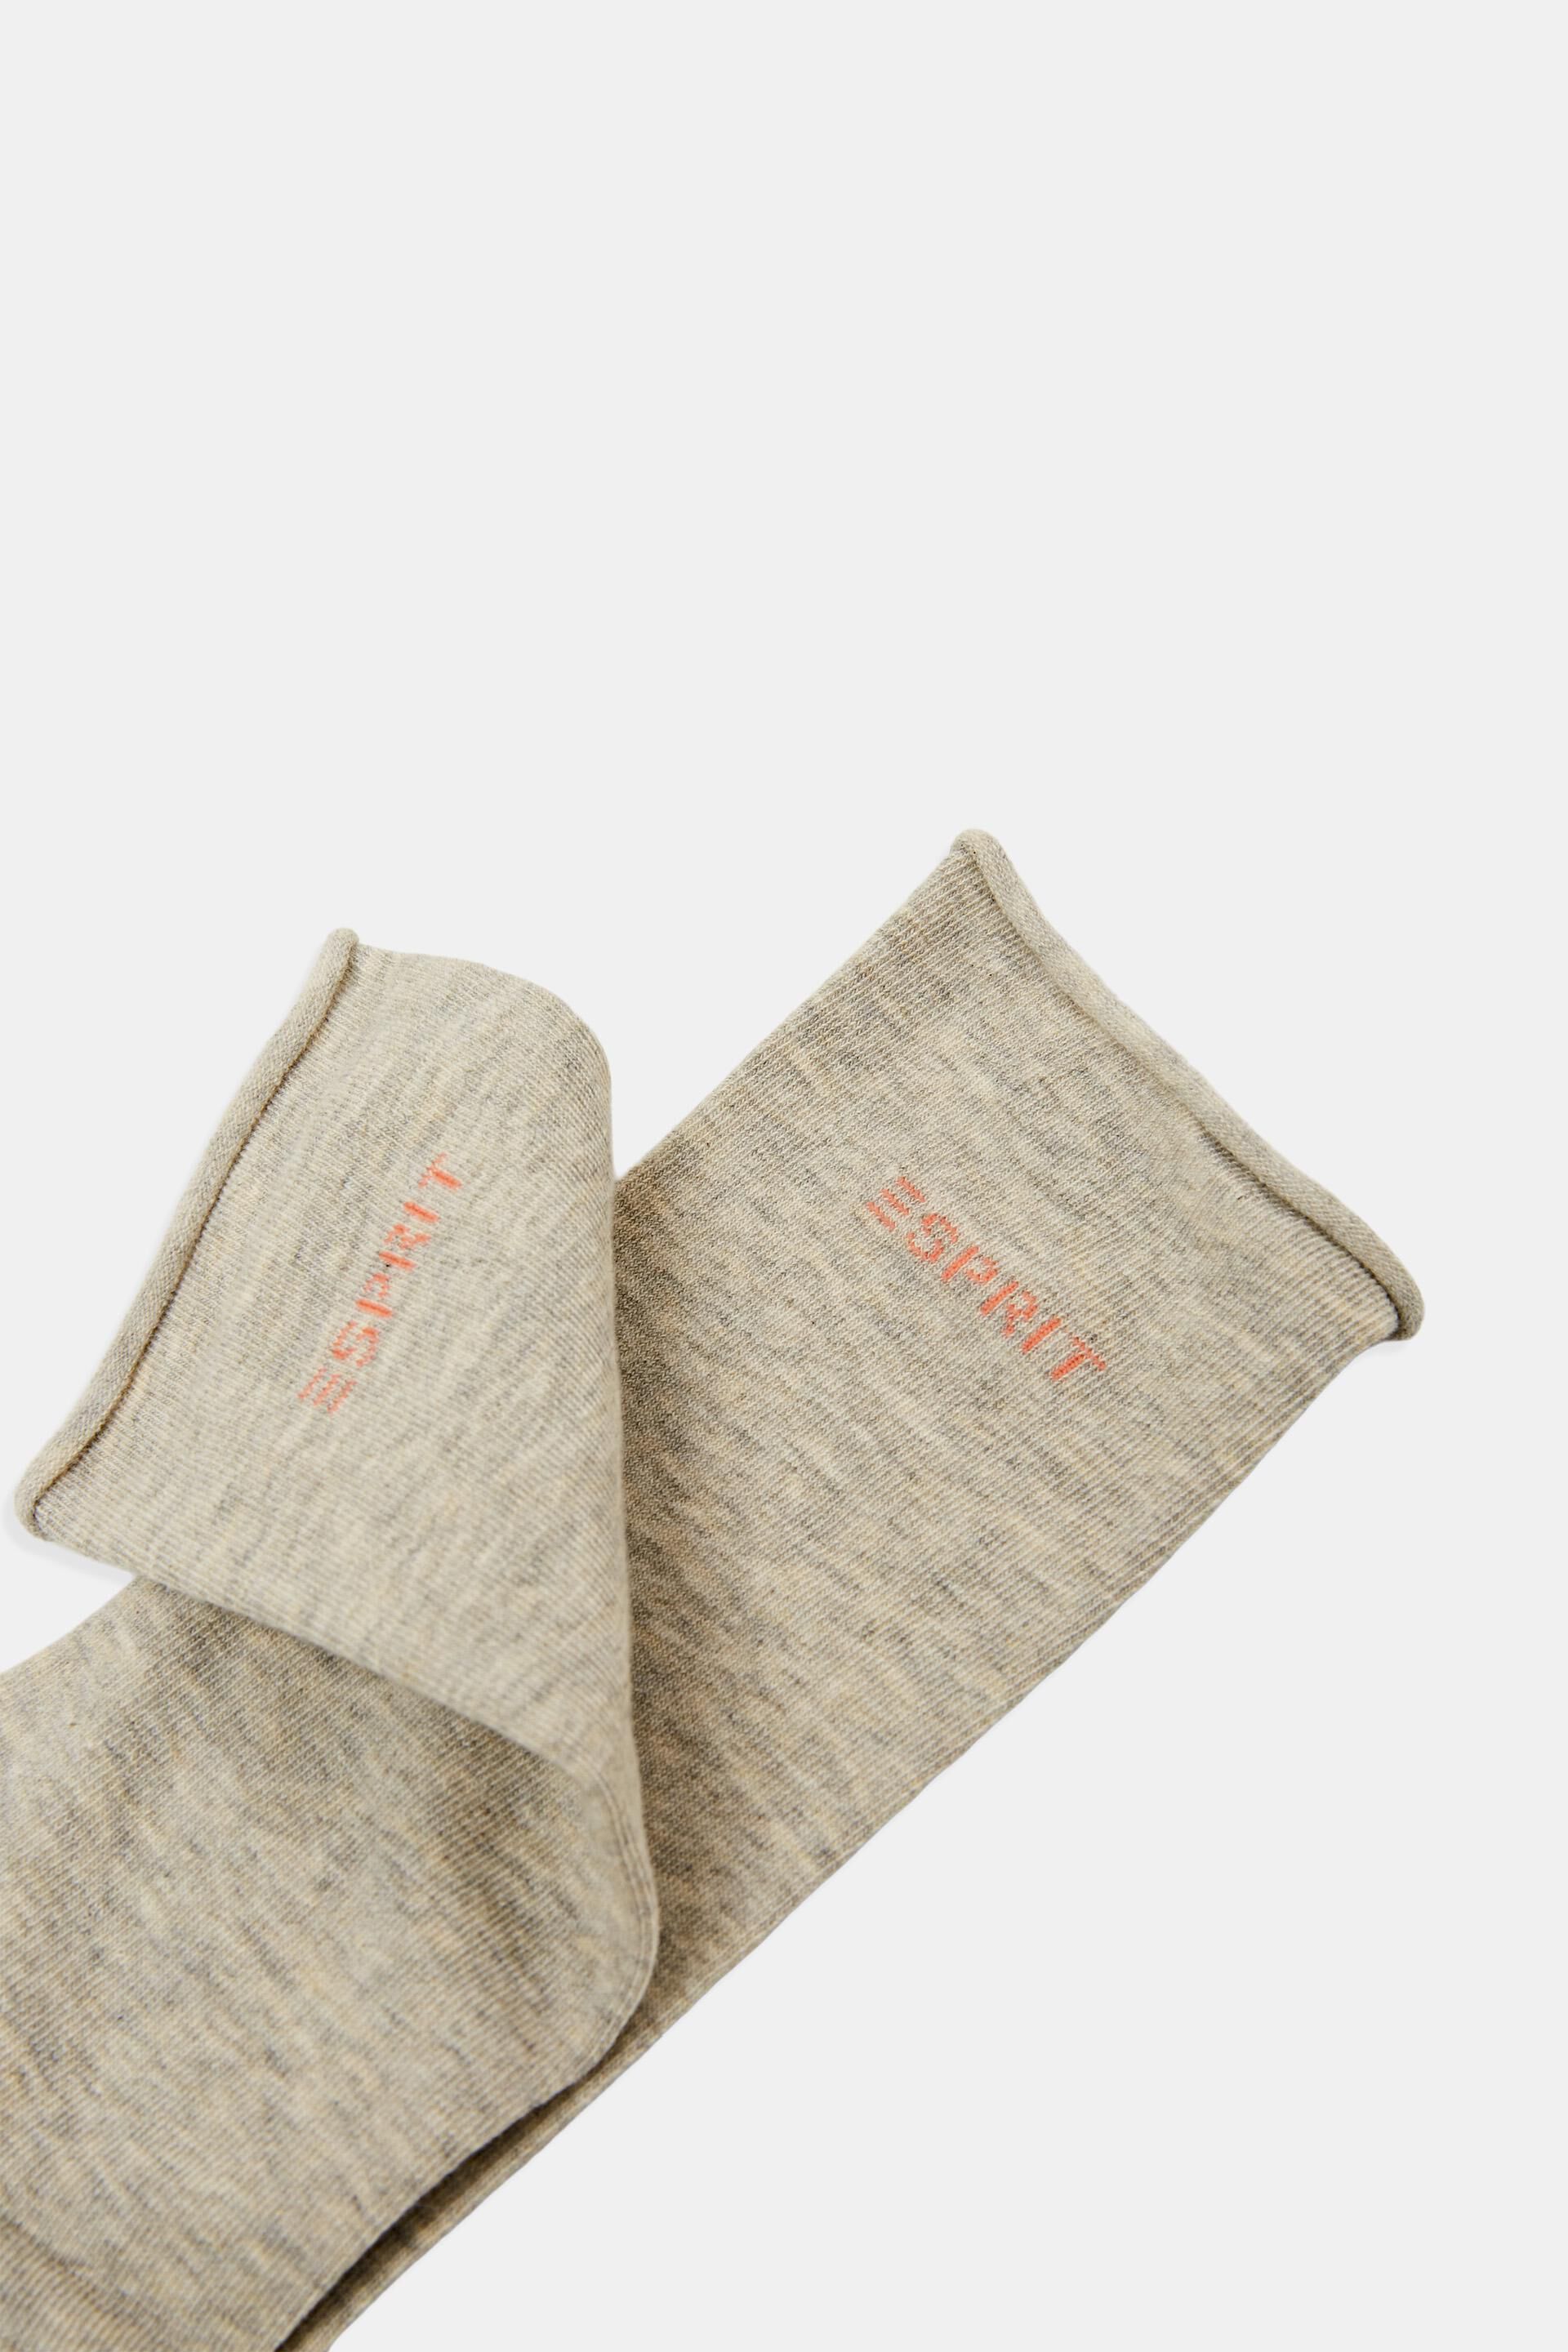 Esprit Bio-Baumwolle Socken 2er-Pack Rollkanten, mit